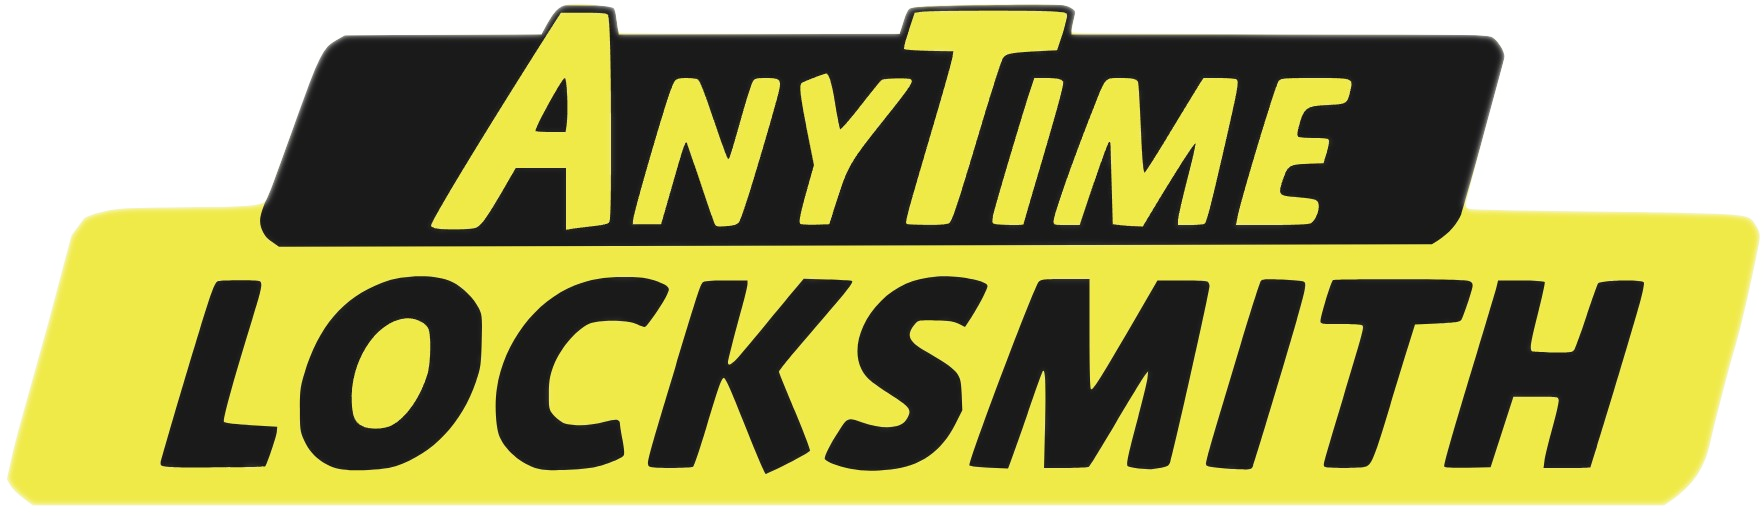 Anytime Locksmith Logo